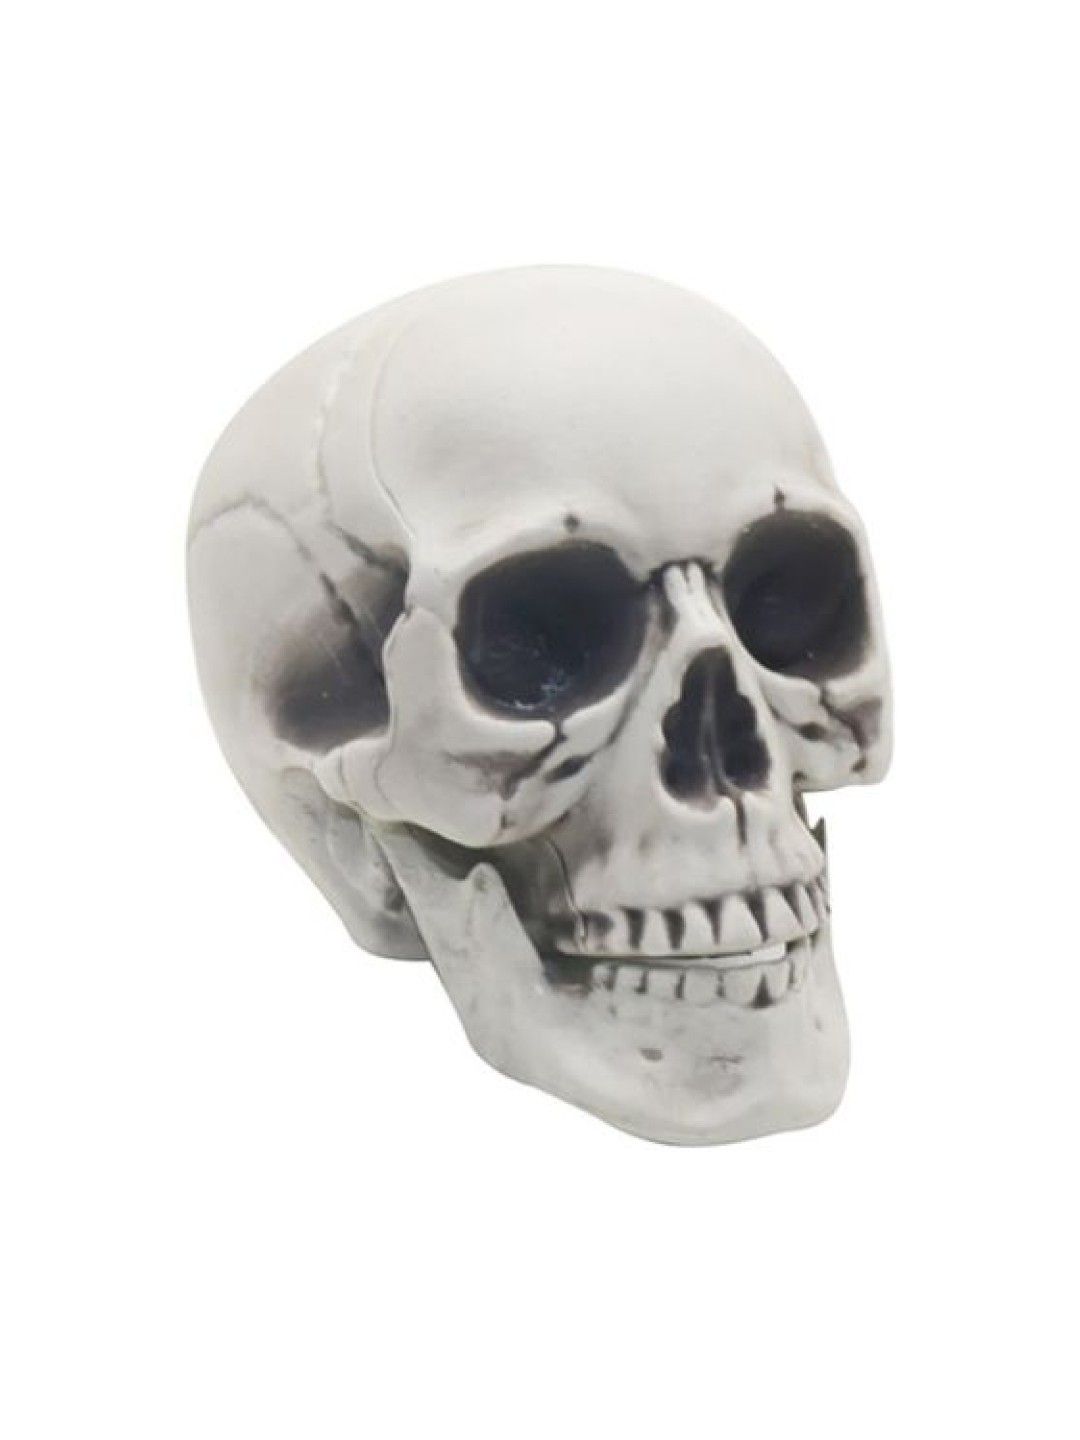 Elves of the Party Halloween Decor: Skeleton Skull